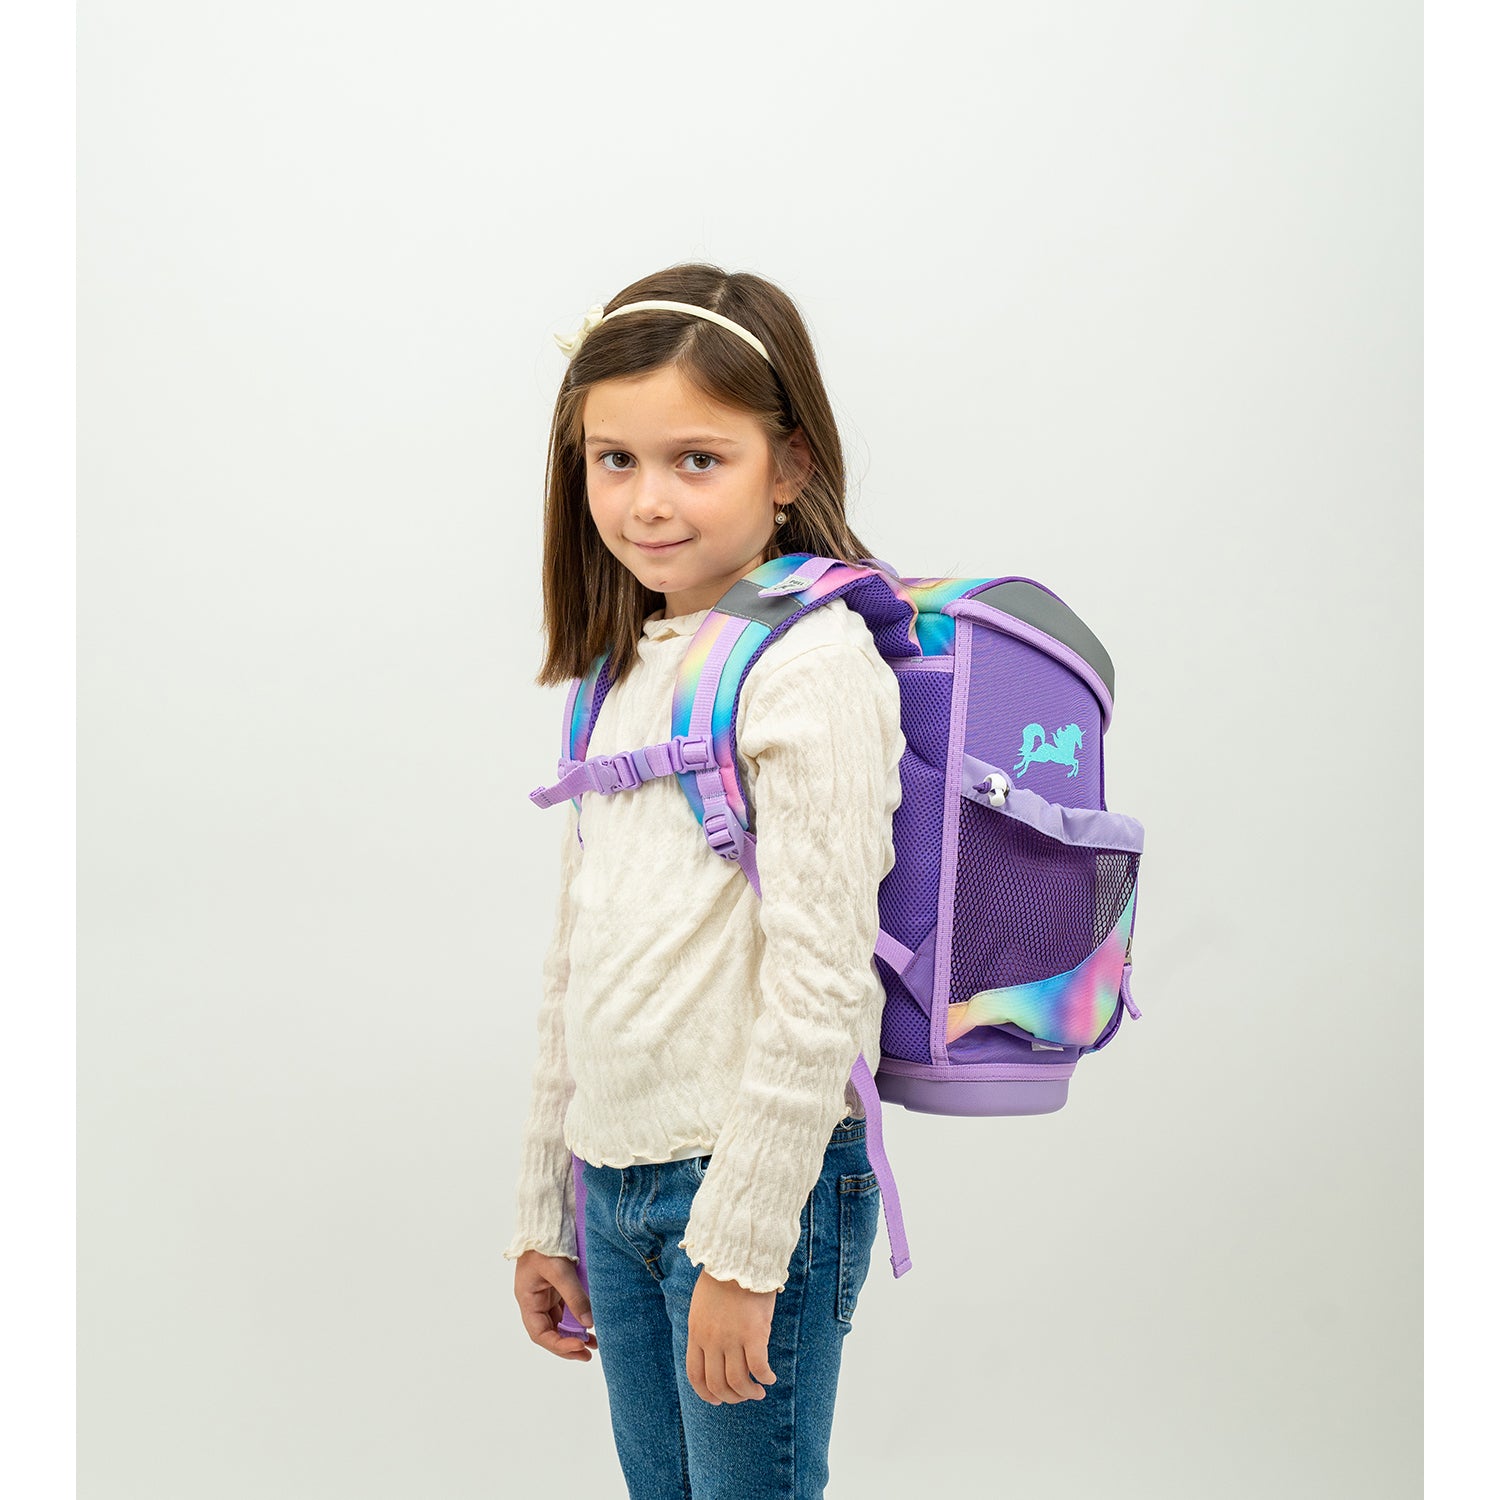 Mini-Fit Rainbow Color schoolbag set 4 pcs